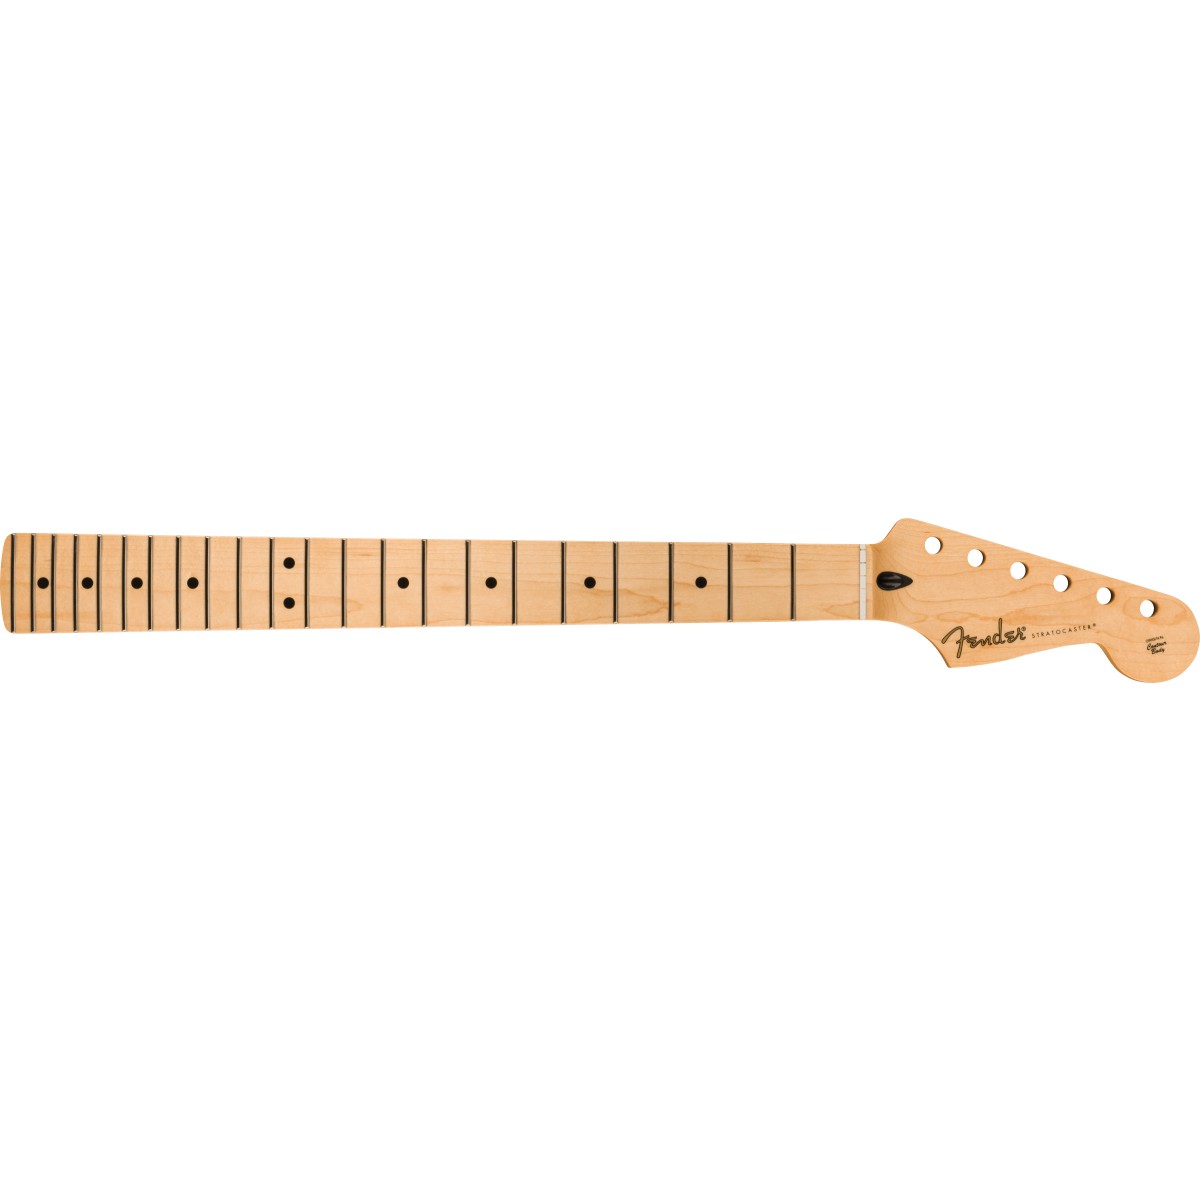 Manico Fender Player Series Stratocaster 22 Medm Jumbo Frets Maple 9.5" Modern C 0994502921